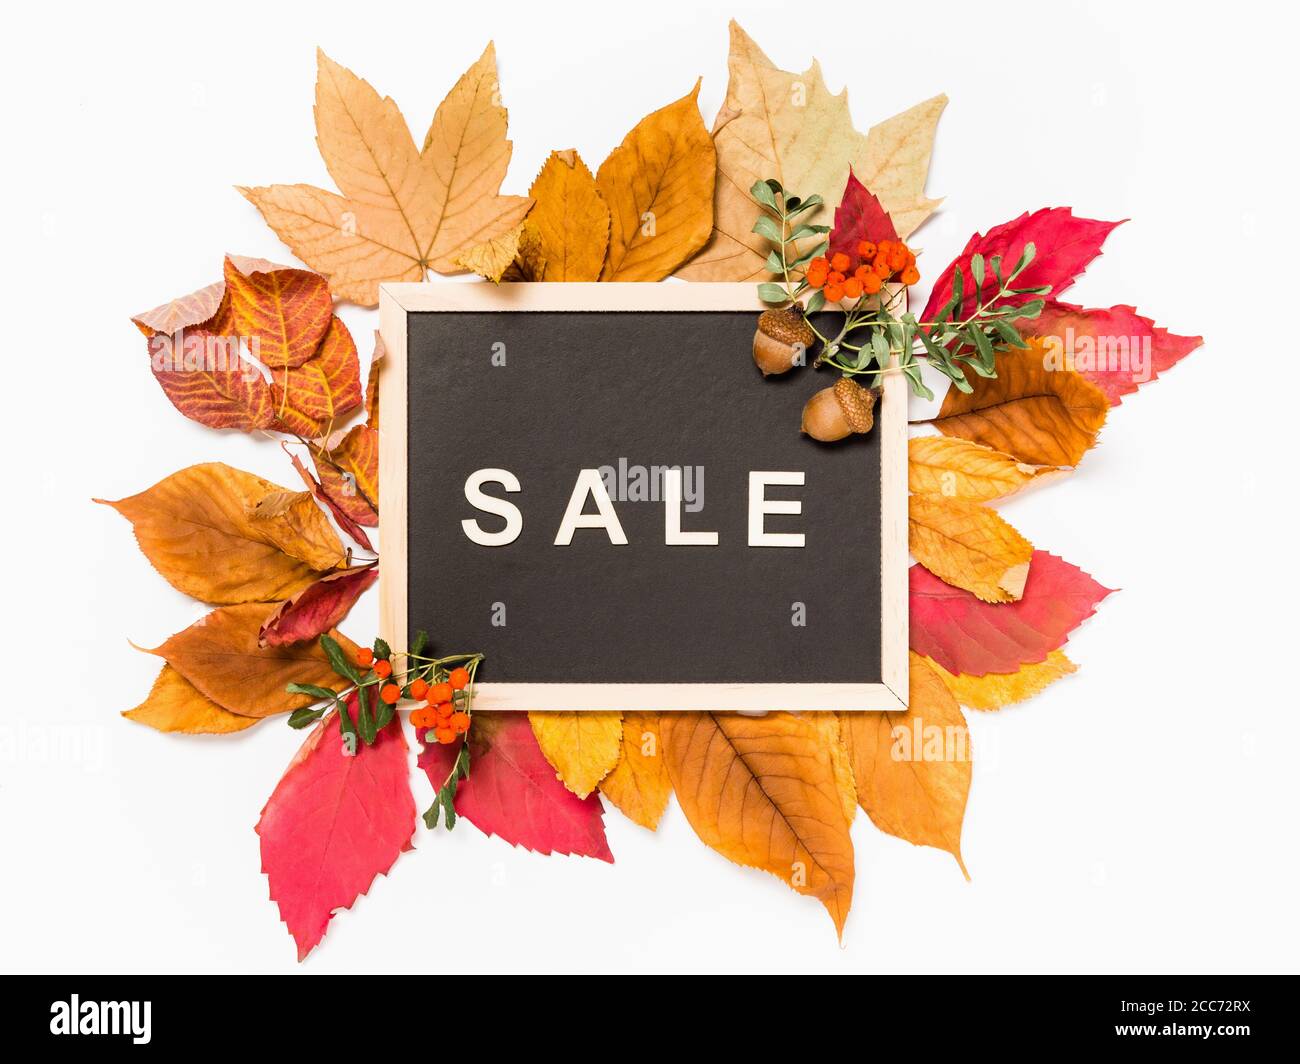 Herbstverkauf: Tafel mit Wort Verkauf in Holzbuchstaben auf einem Stapel von roten und gelben Herbstblättern auf weißem Hintergrund. Saisonaler Verkauf und Rabattangebot Stockfoto